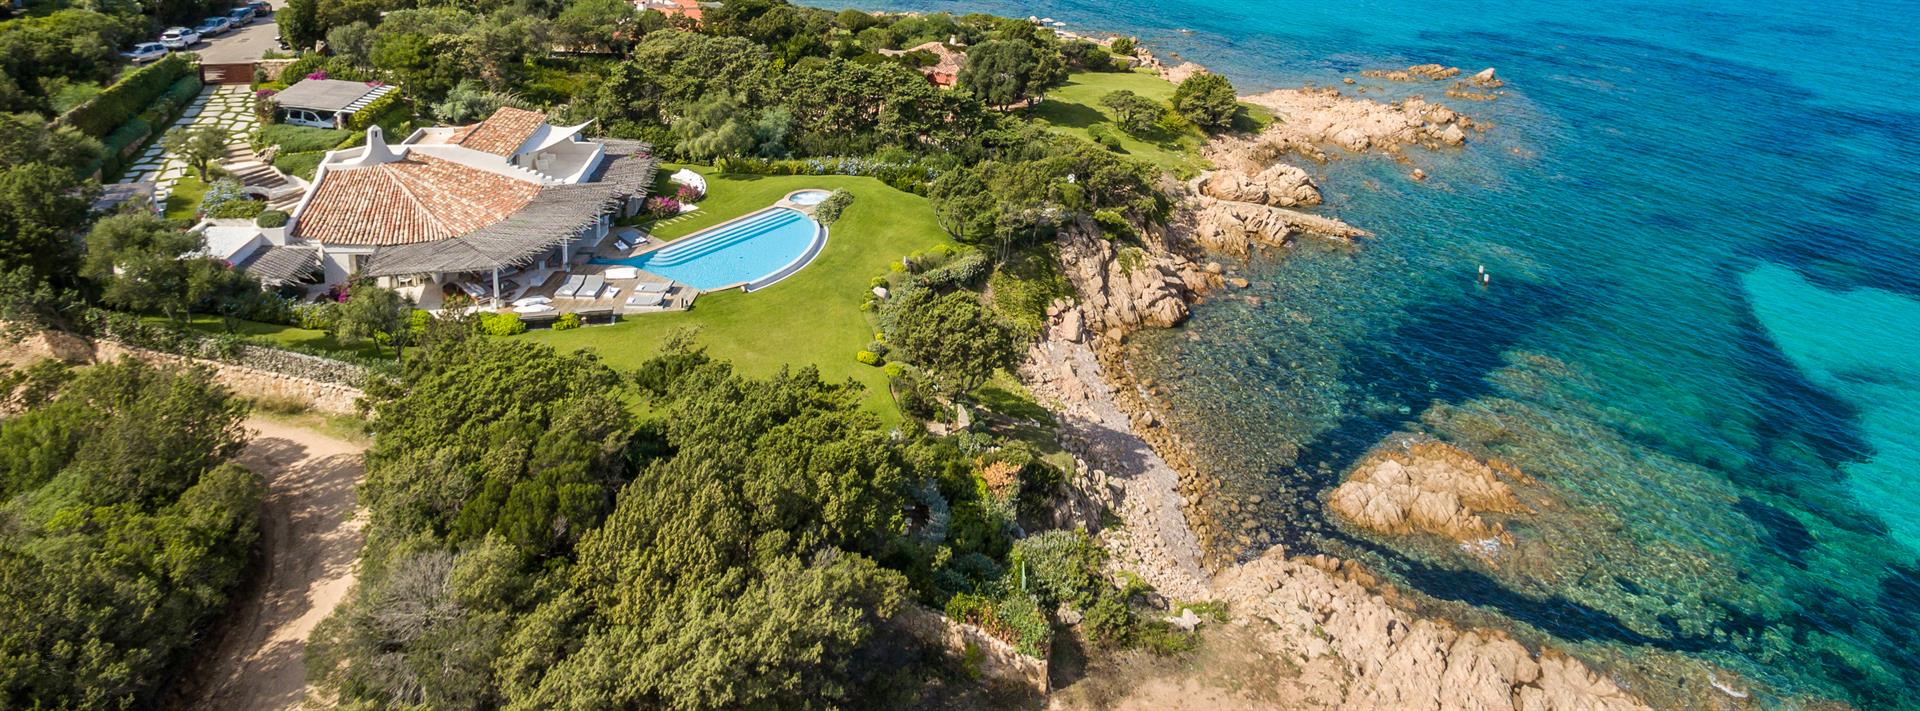 Unique waterfront Villa: a luxury home for sale in Porto Cervo, Emerald ...